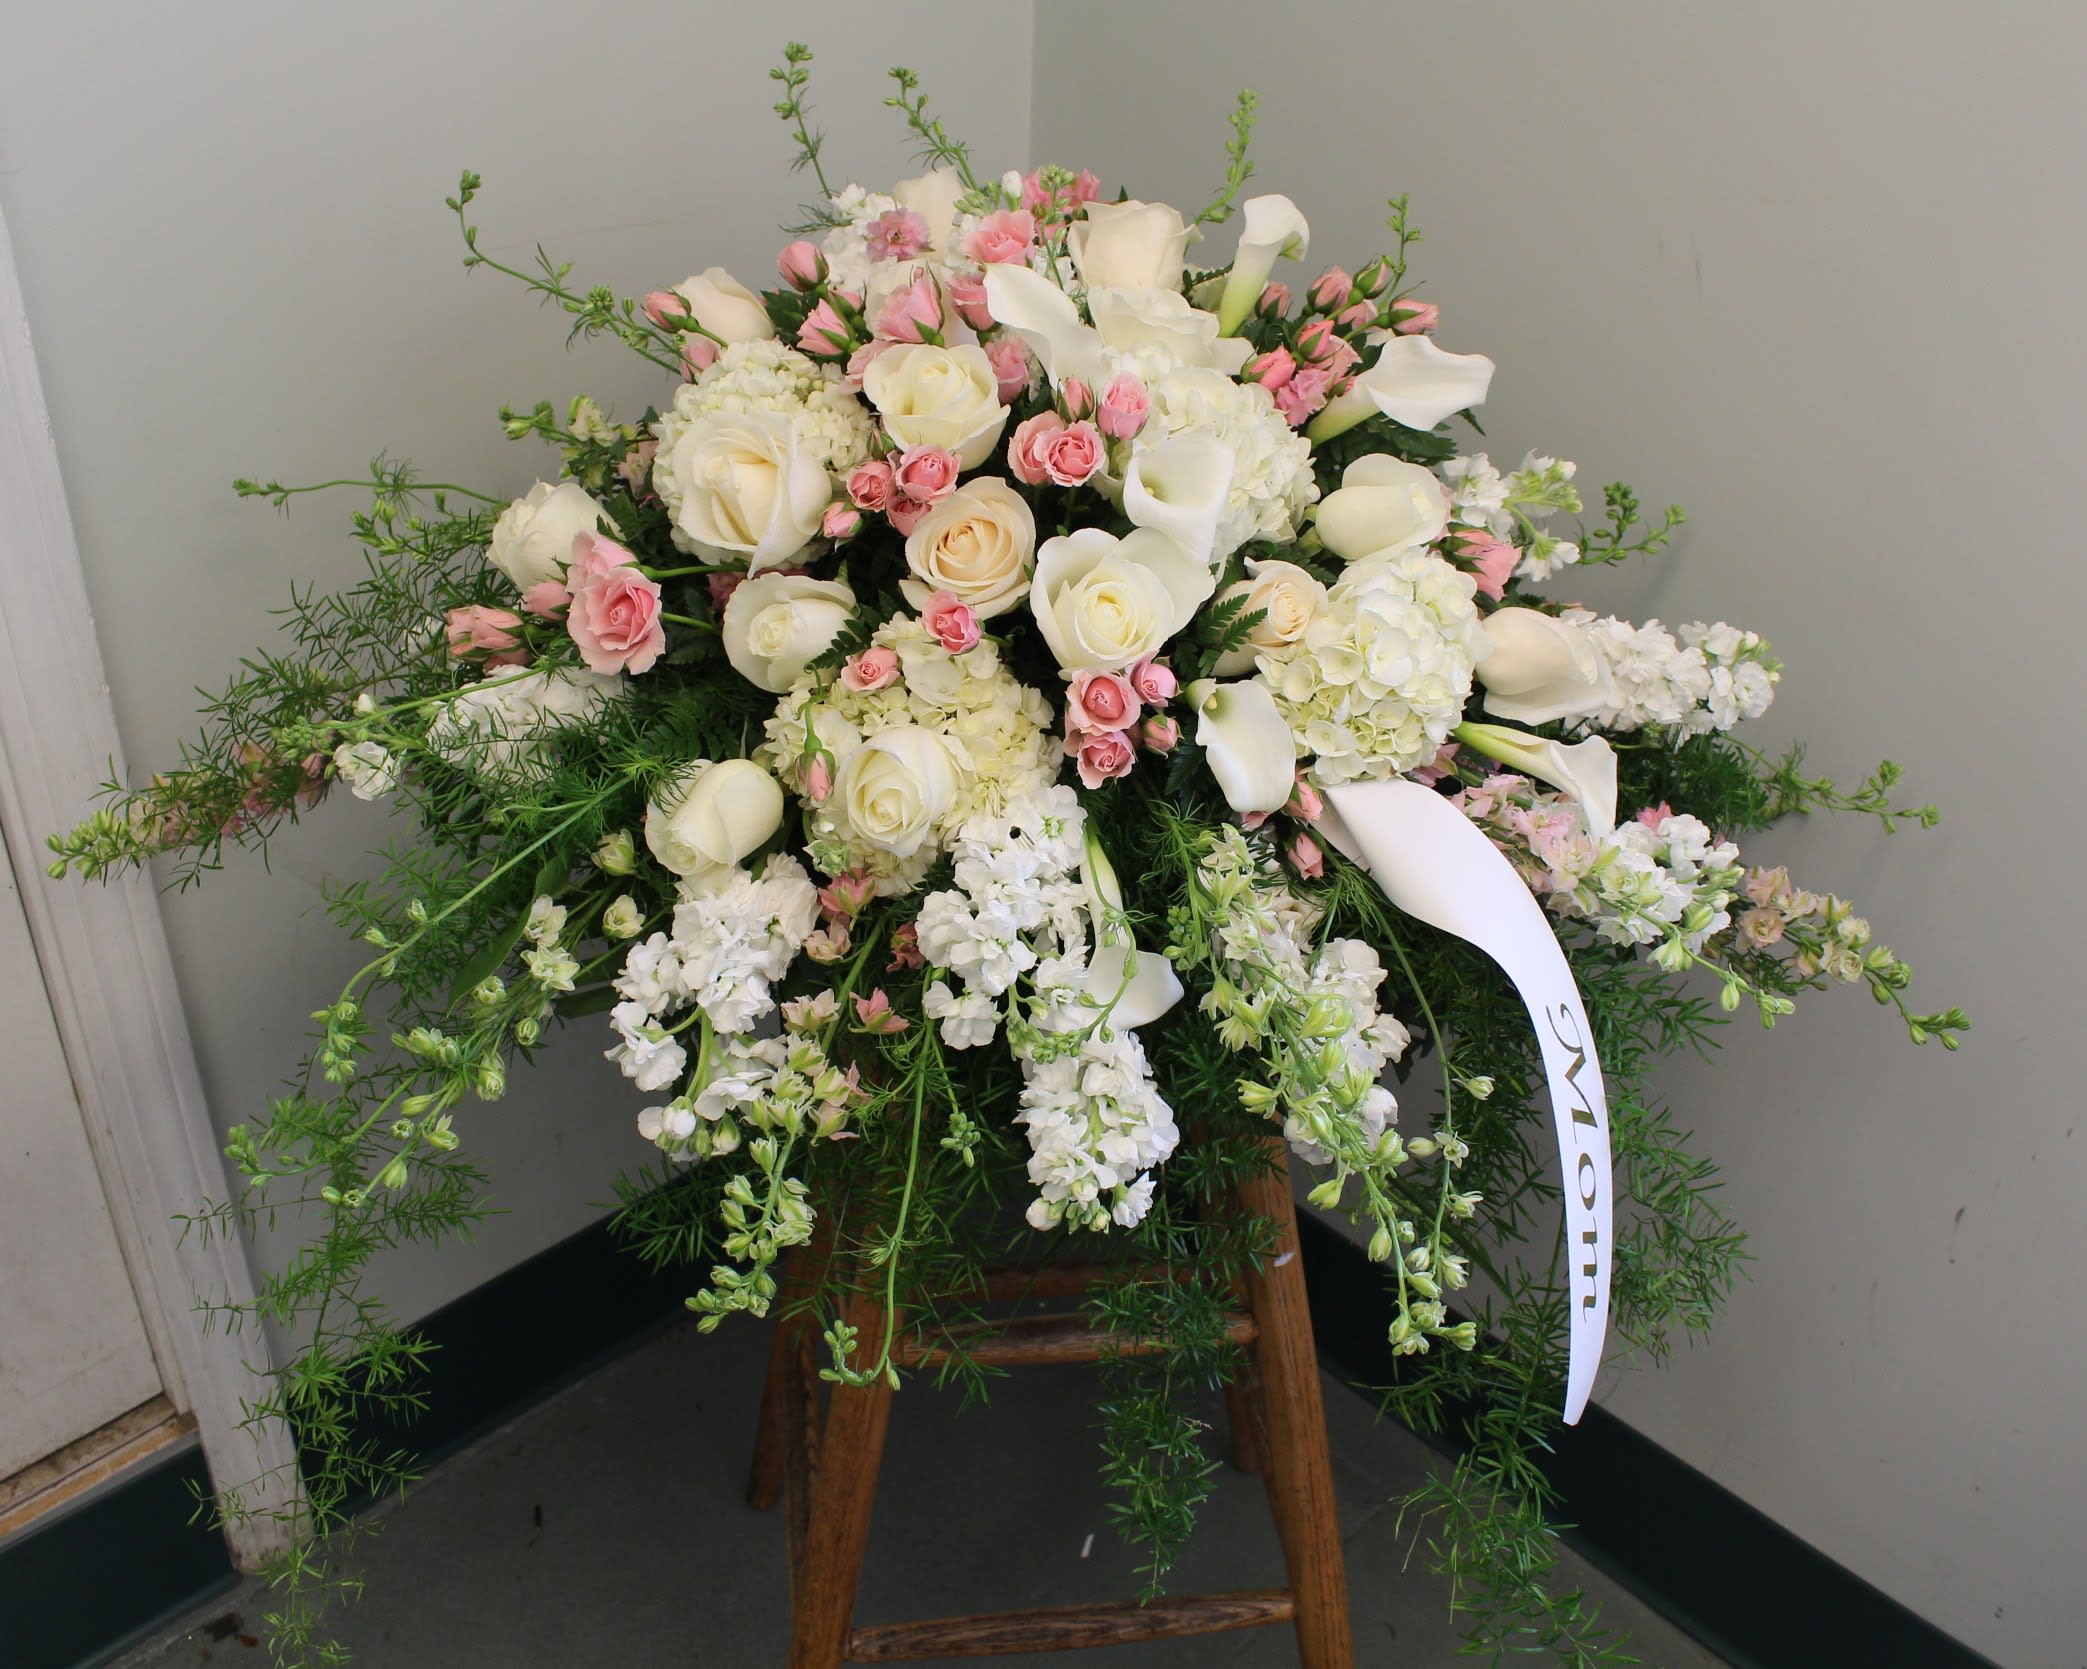 Evans Peace Eternal Casket Funeral Blanket In Peabody Ma Evans Flowers 